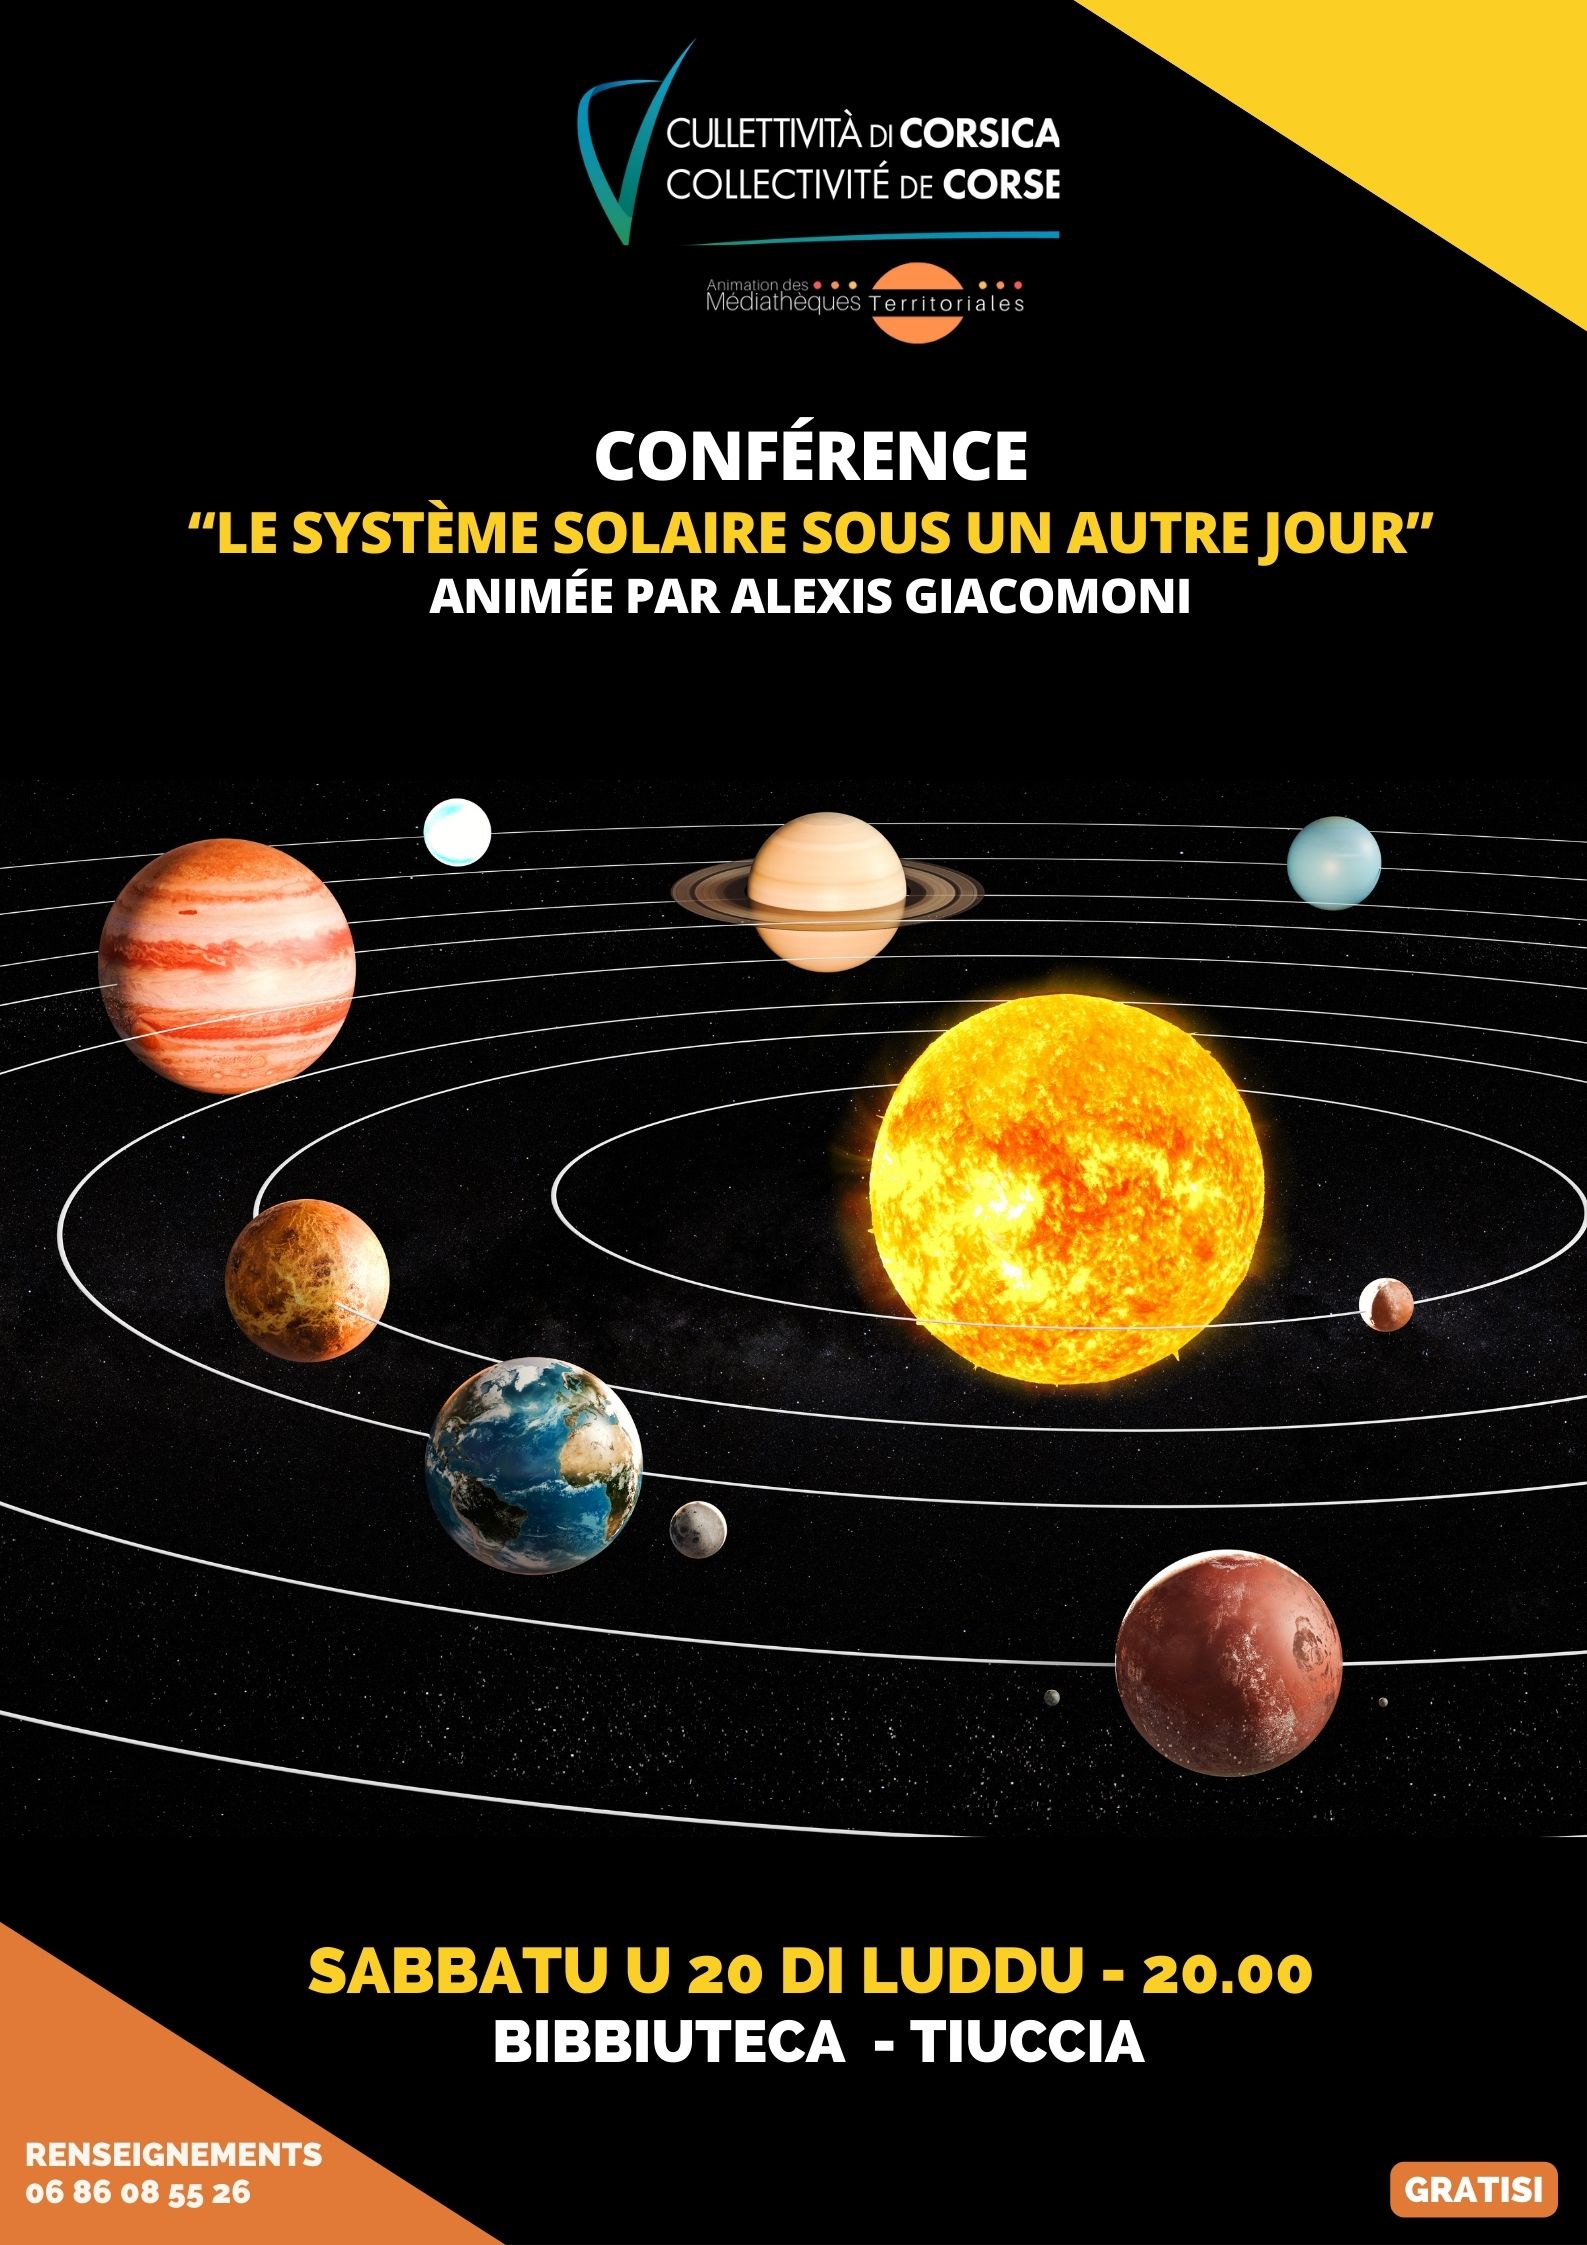 "Le système solaire sous un autre jour" animée par Alexis Giacomoni - Bibbiuteca di Tiuccia